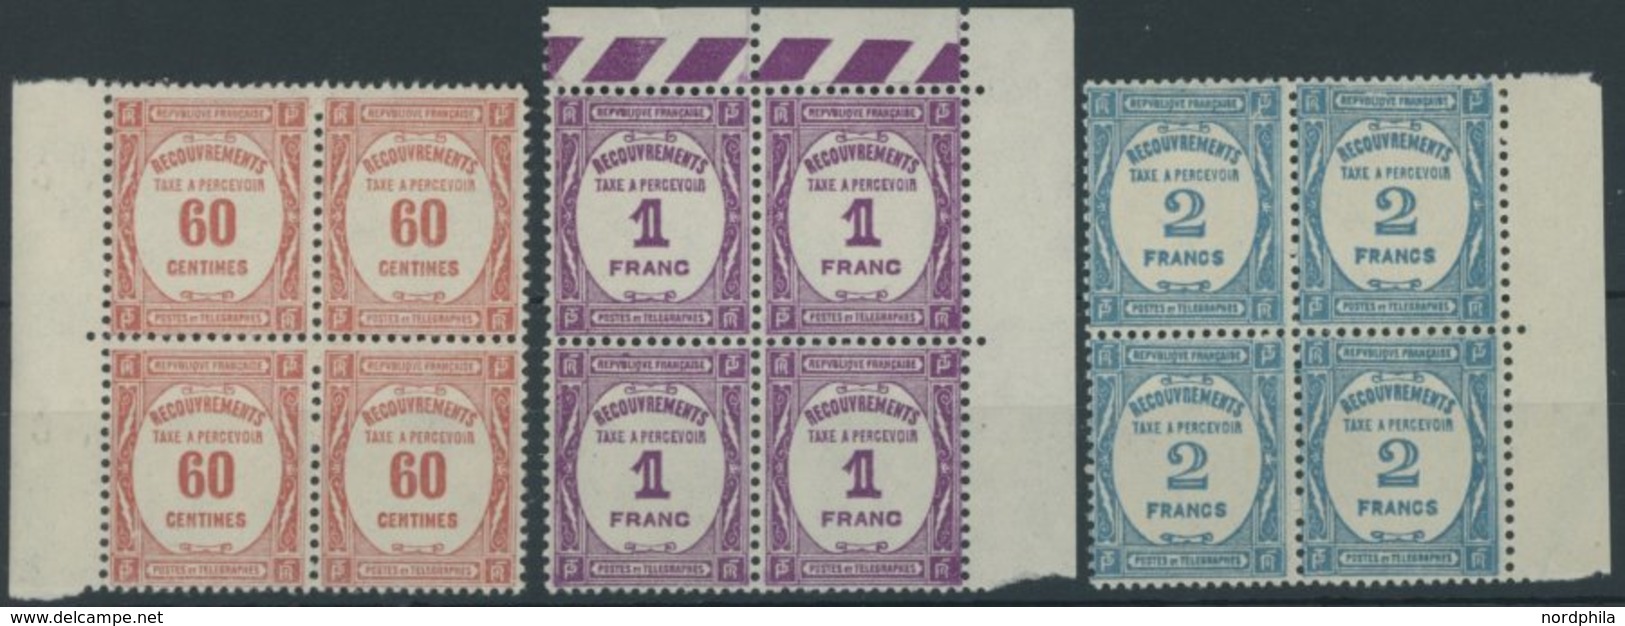 PORTOMARKEN P 59-61 VB **, 1927, 60 C. - 2 Fr. In Randviererblocks, Postfrisch, Pracht, Mi. 608.- - Postage Due